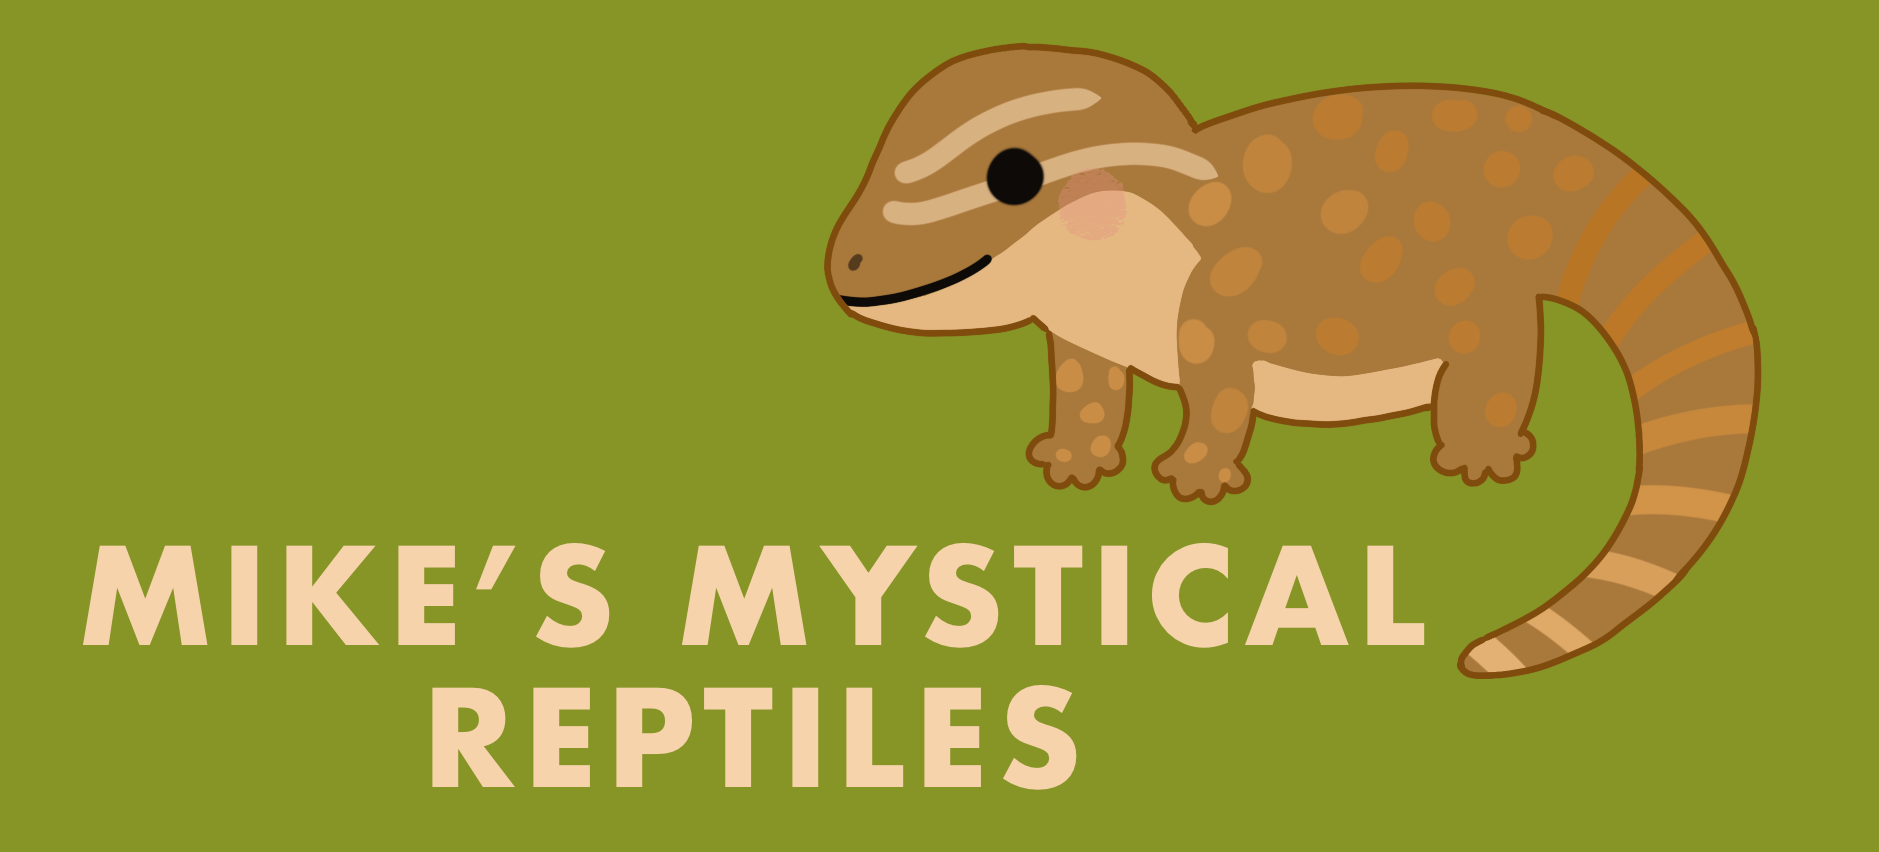 Mikes Mystical Reptiles Logo